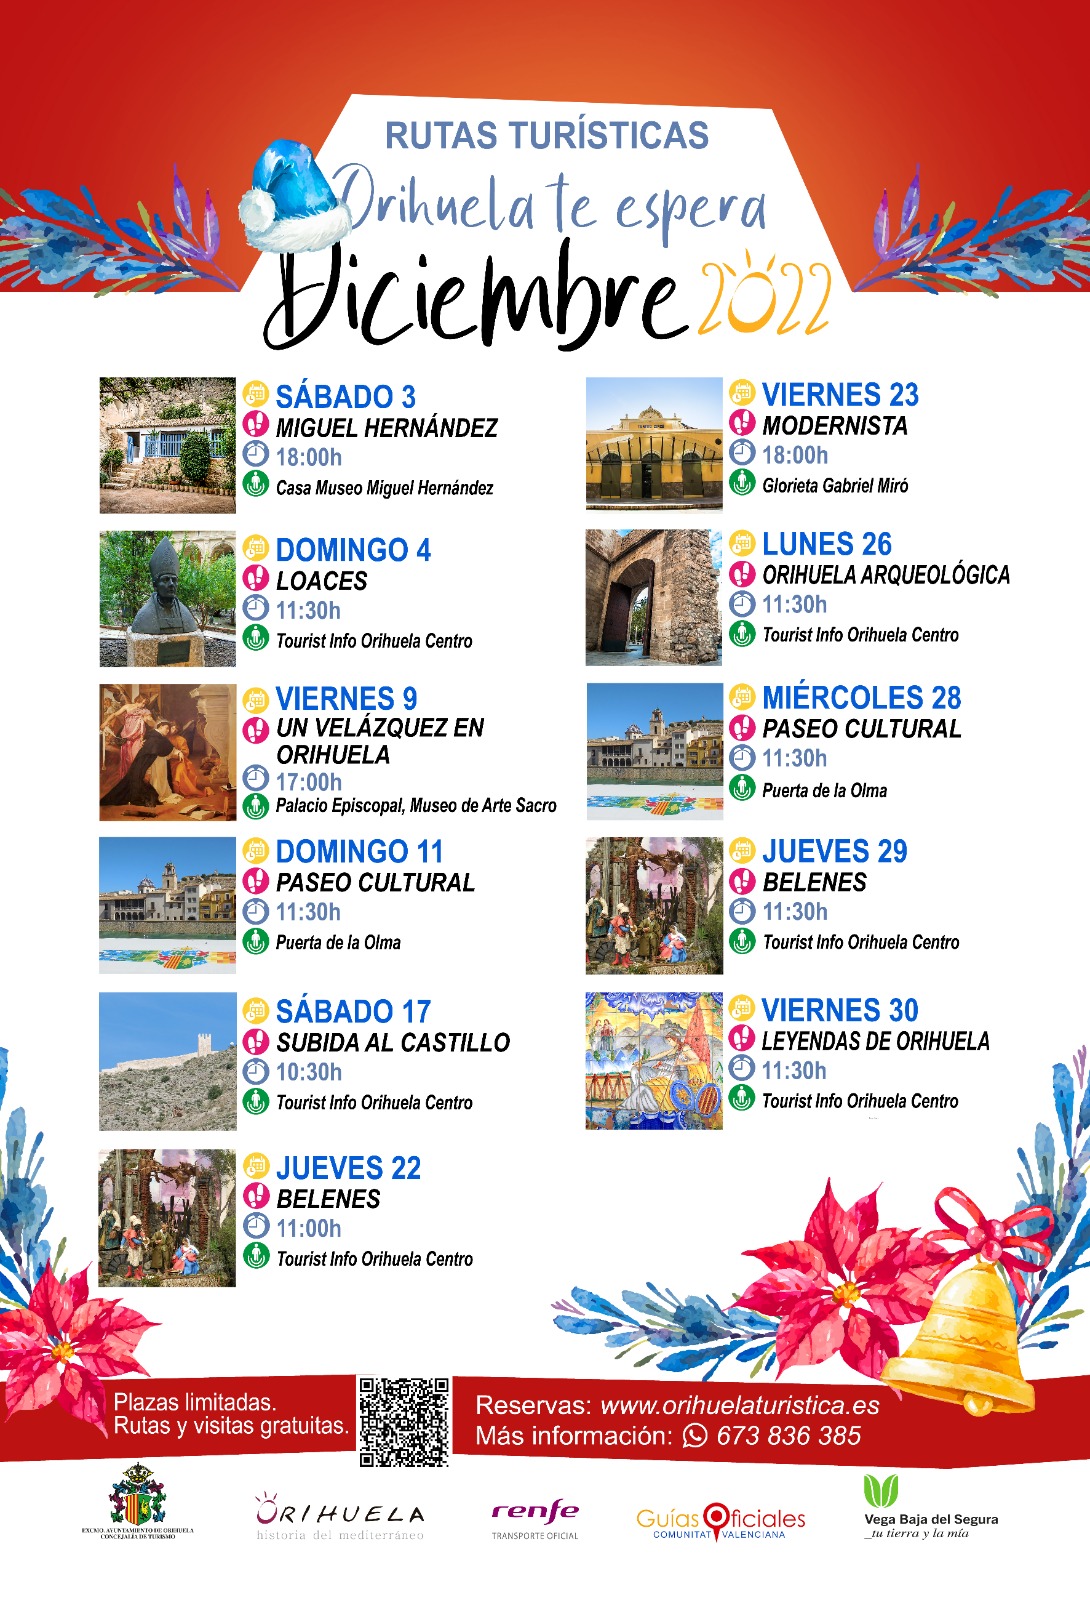 Las rutas turísticas de diciembre incorporan la visita a los belenes